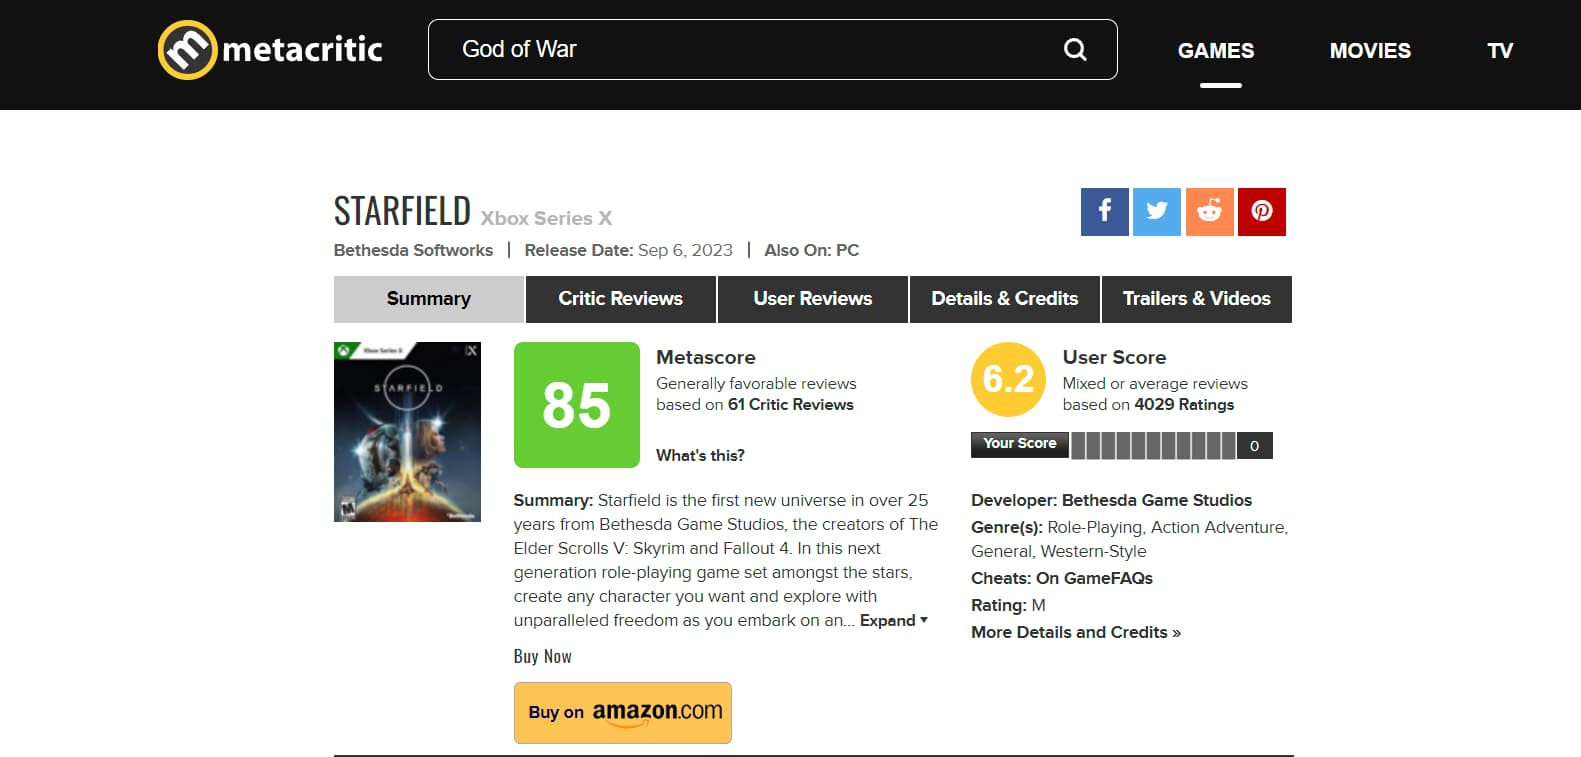 Call of War - Metacritic